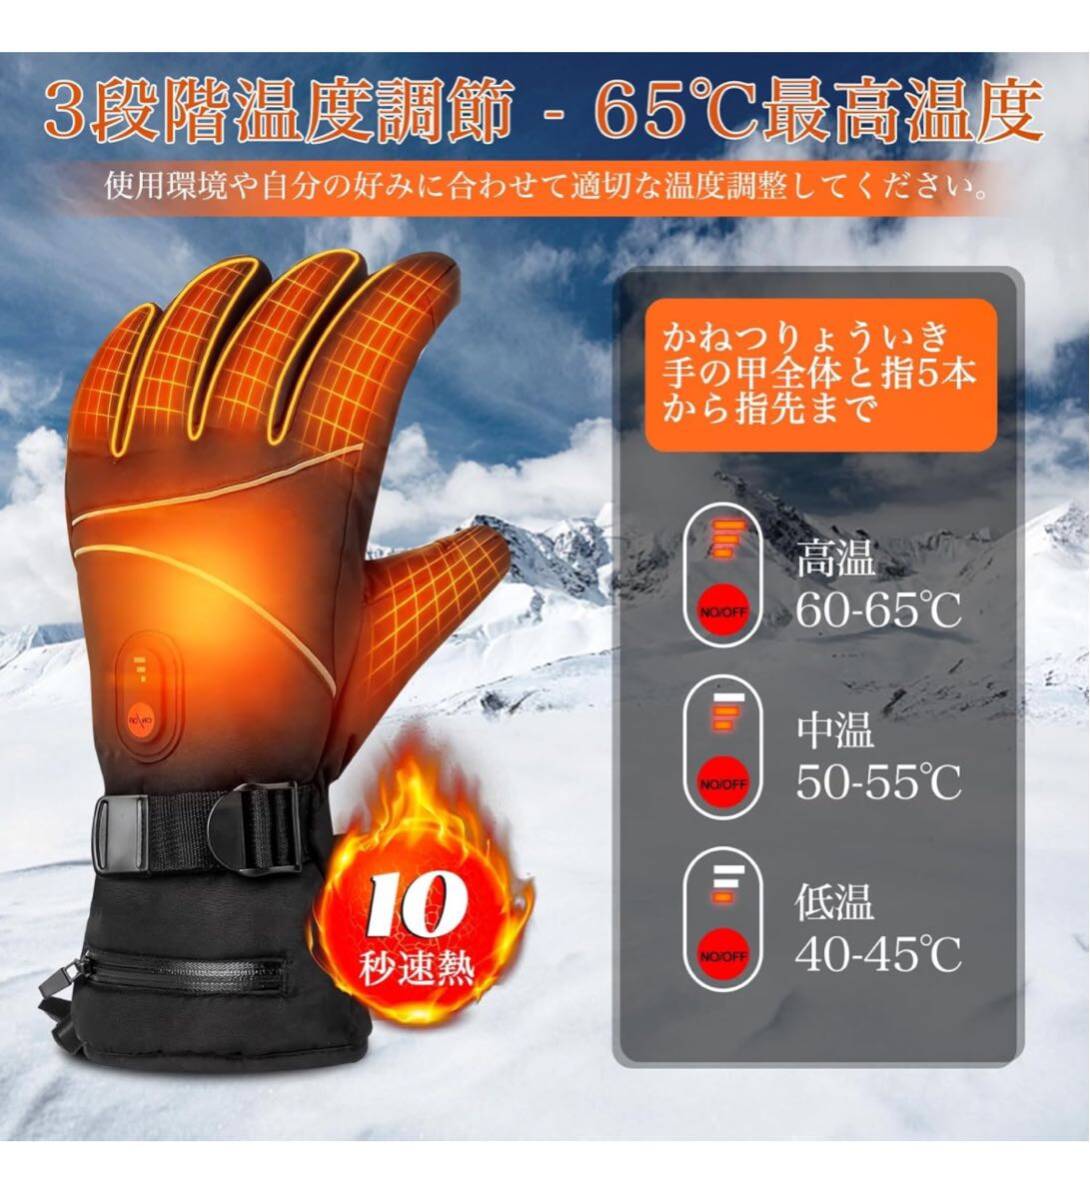 電熱グローブ 電熱手袋 バイク 10000mAh大容量バッテリー付 65℃最高温度 シンサレート中綿 3段階温度調節 加熱グローブ ヒーター手袋_画像2